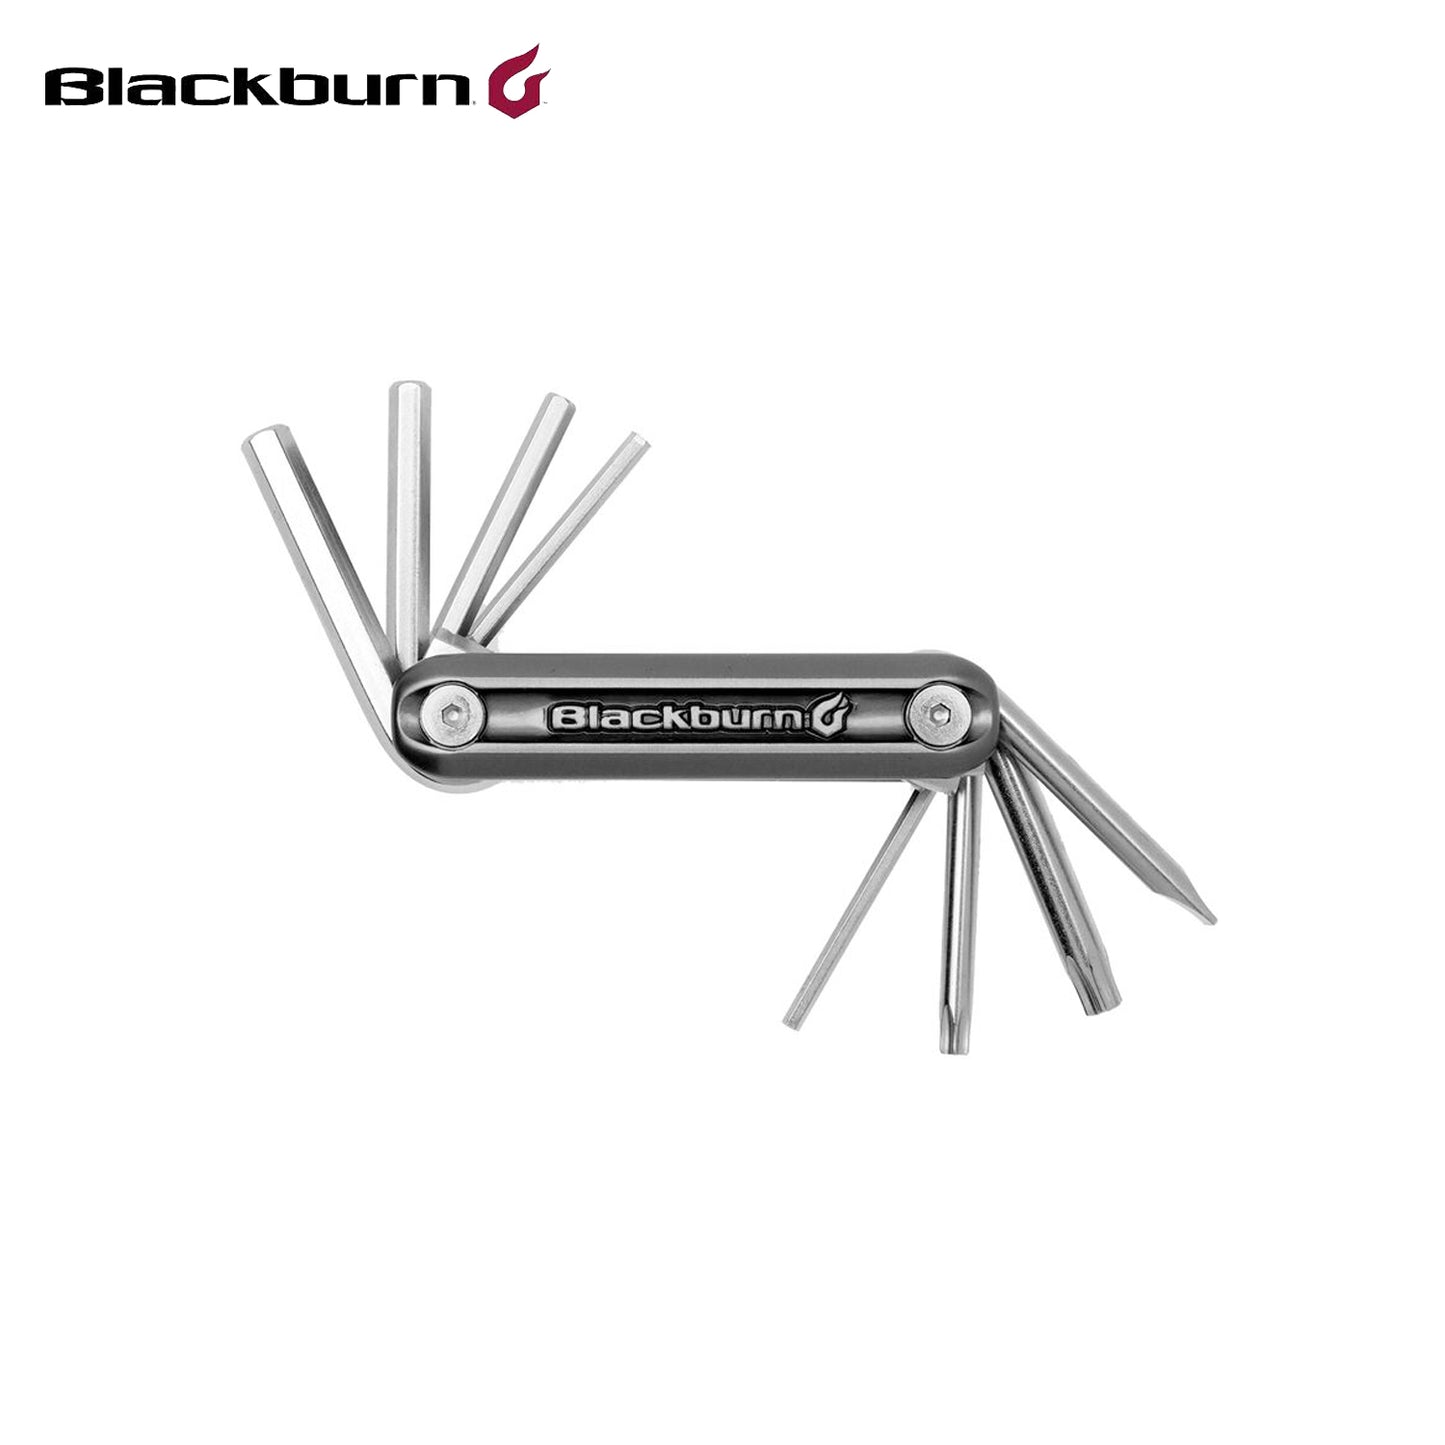 Blackburn Grid 8 Multi Tool